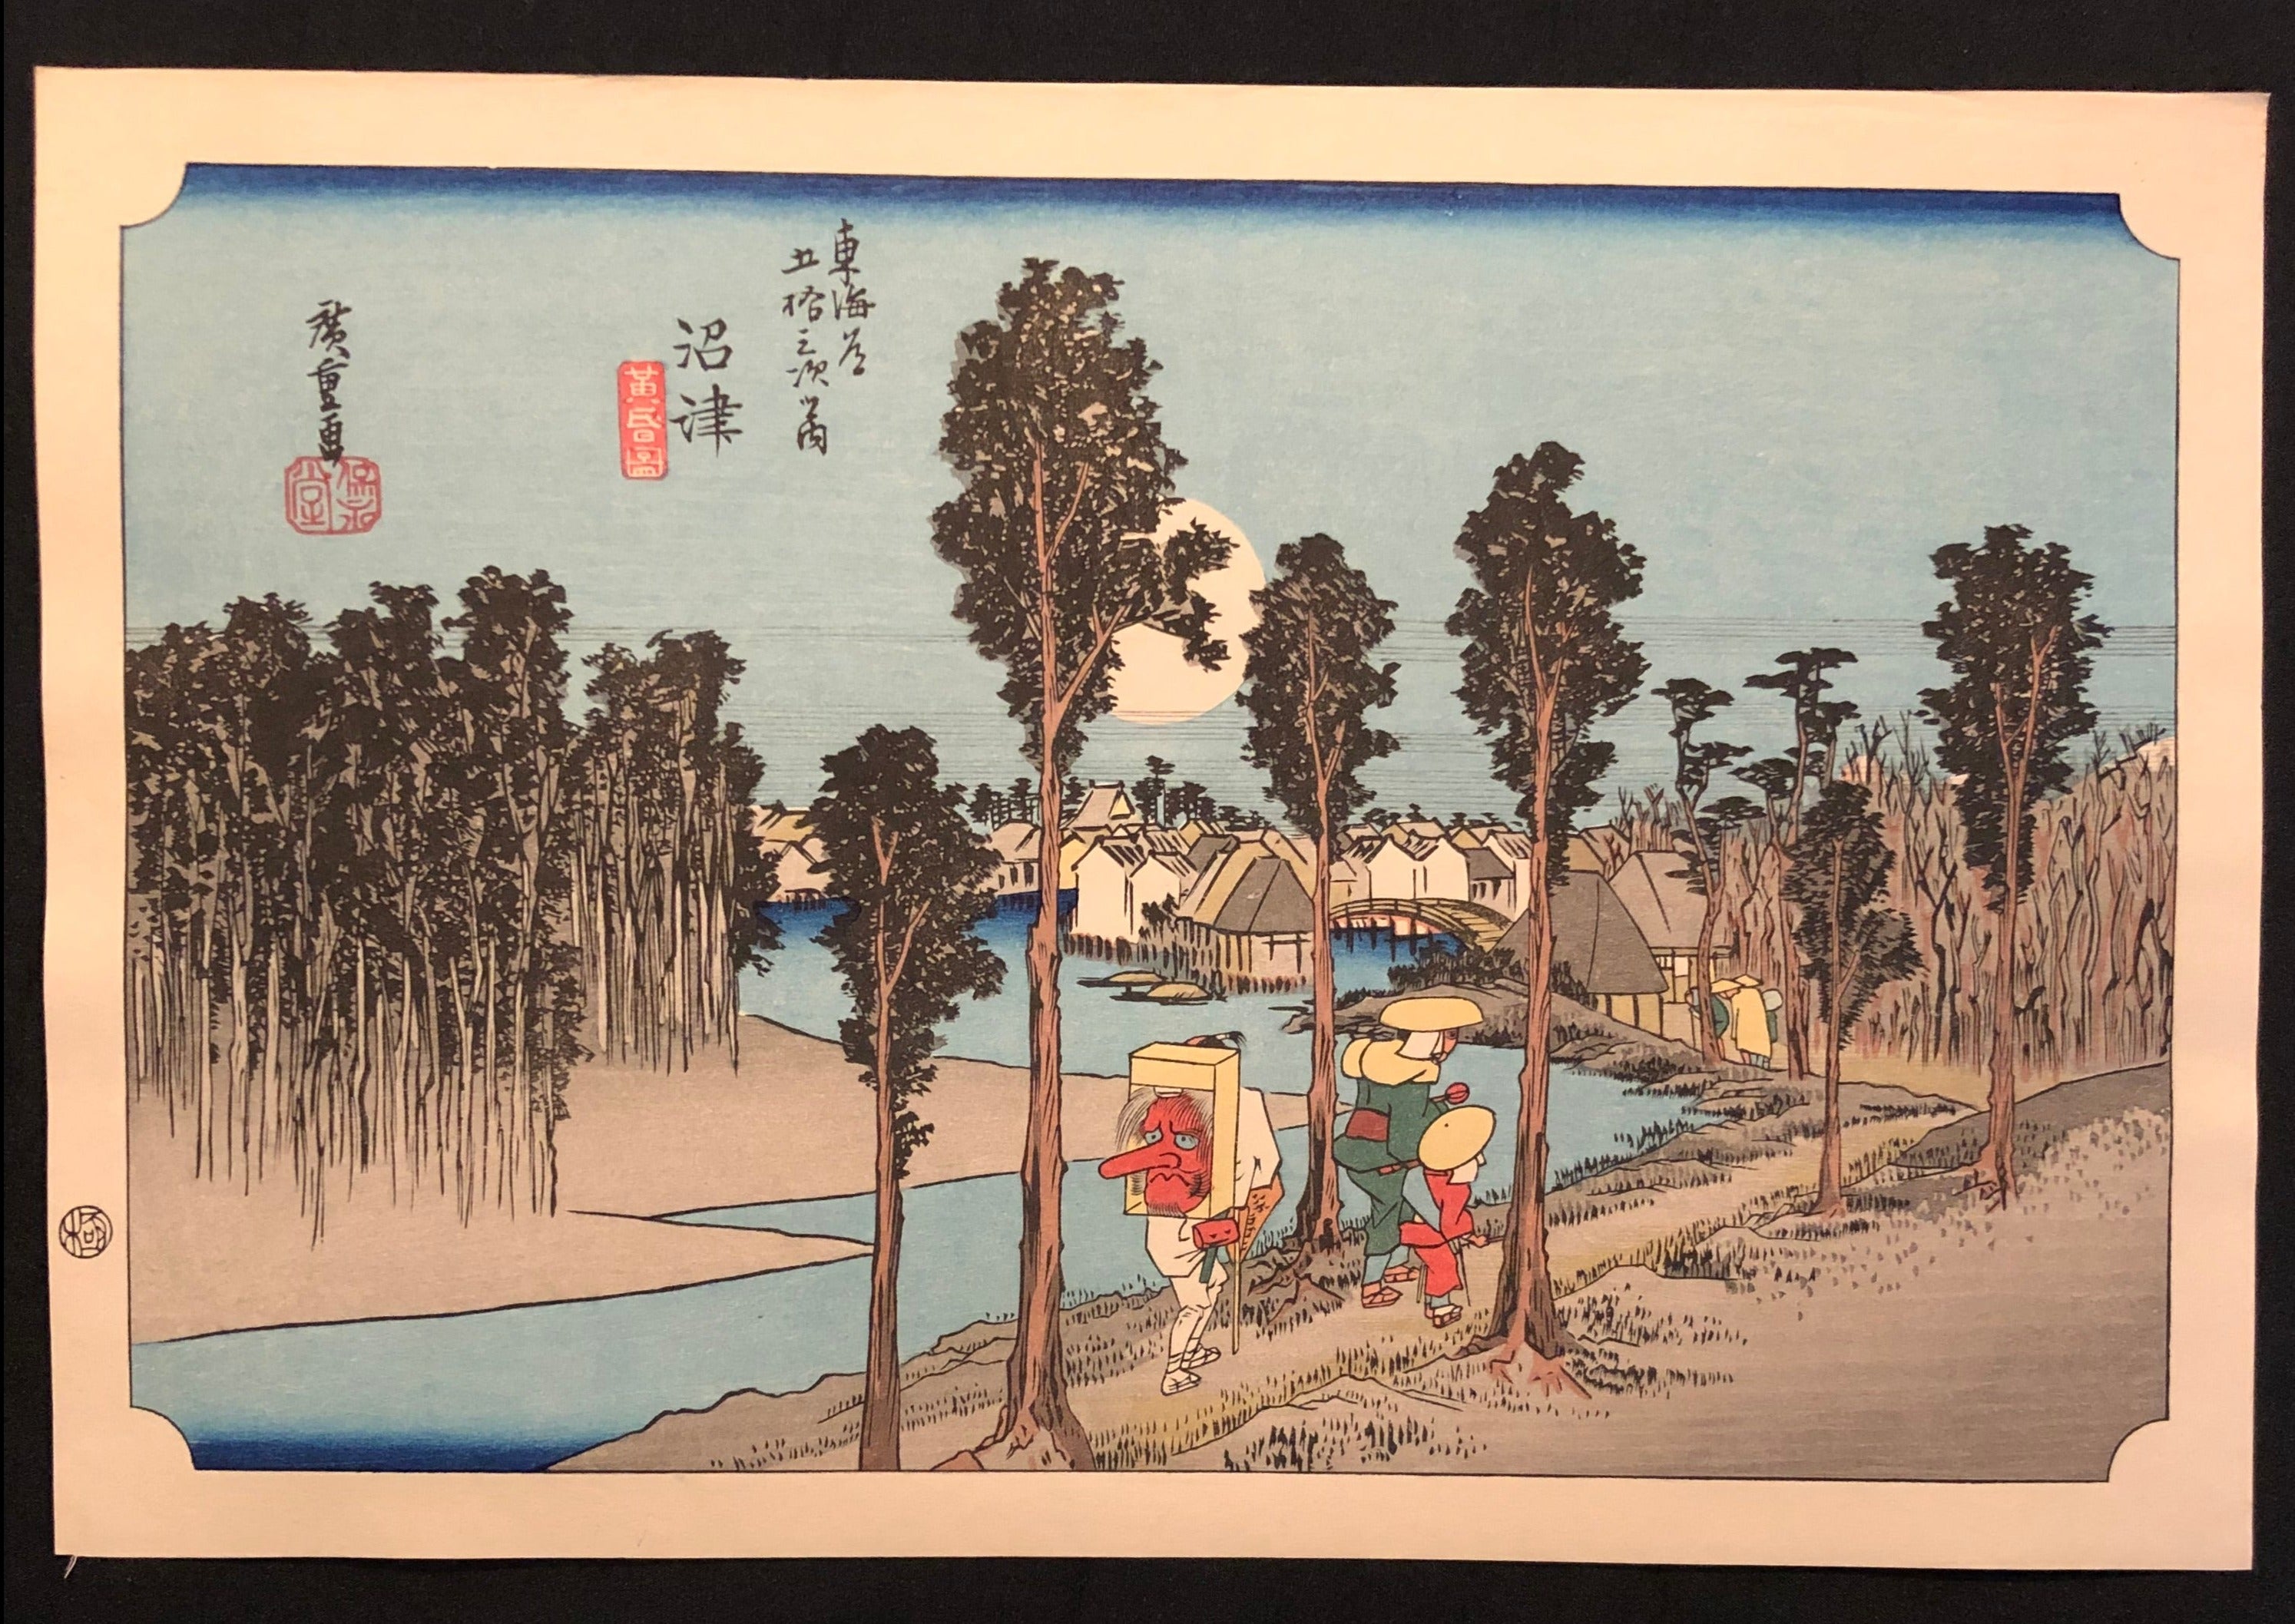 歌川広重 東海道五十三次 復刻版 沼津 木版画 浮世絵 Utagawa 